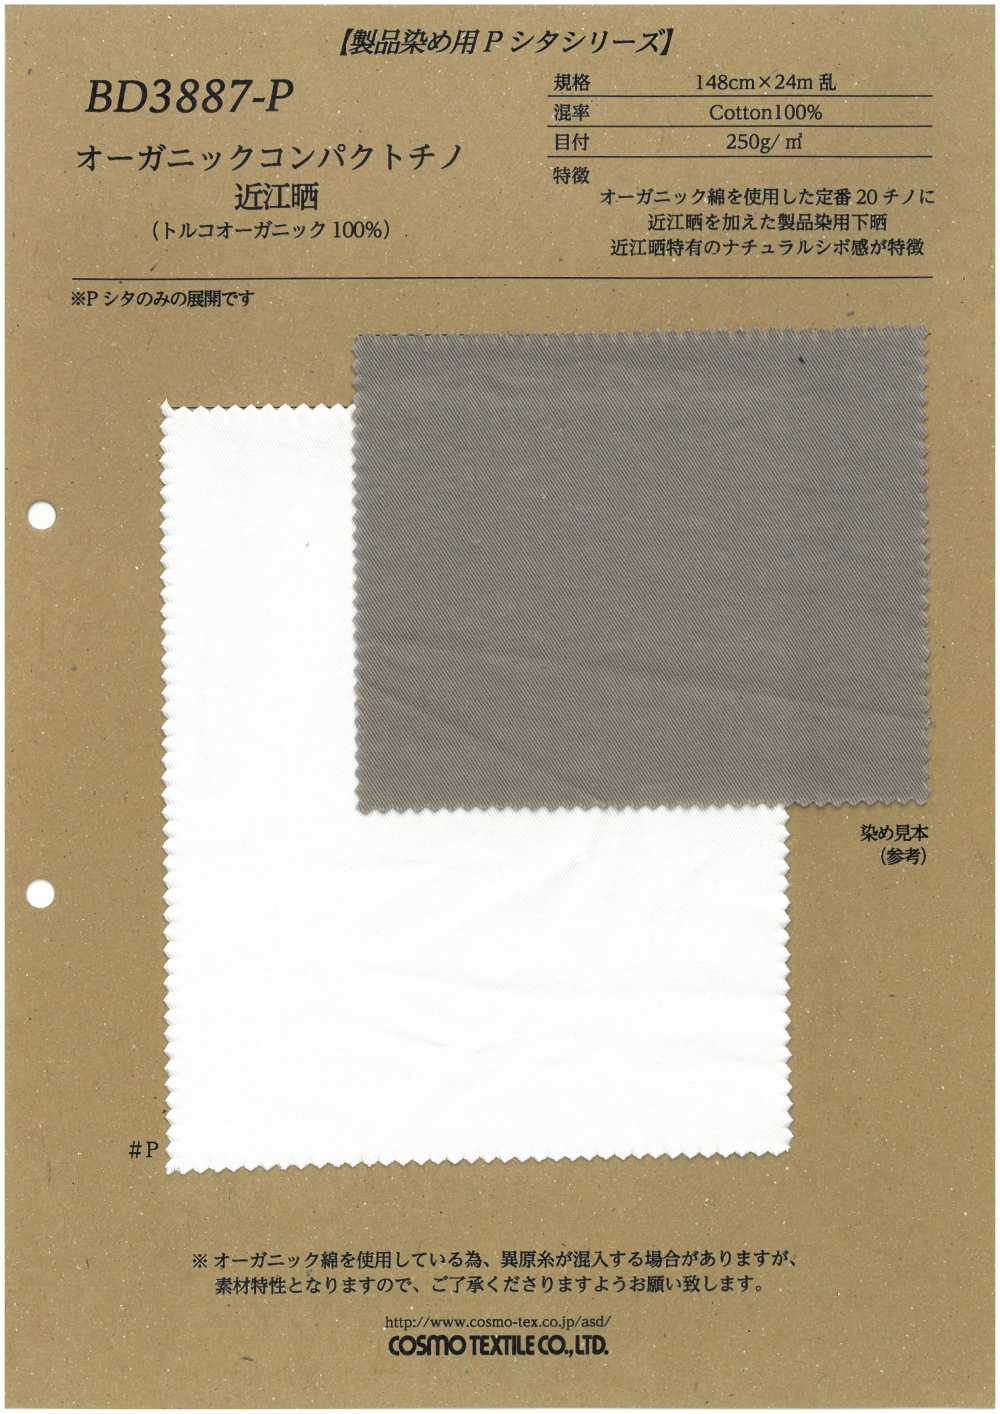 BD3887-P Organic Compact Chino Omi Gebleicht (100% Türkisch Bio)[Textilgewebe] COSMO TEXTILE